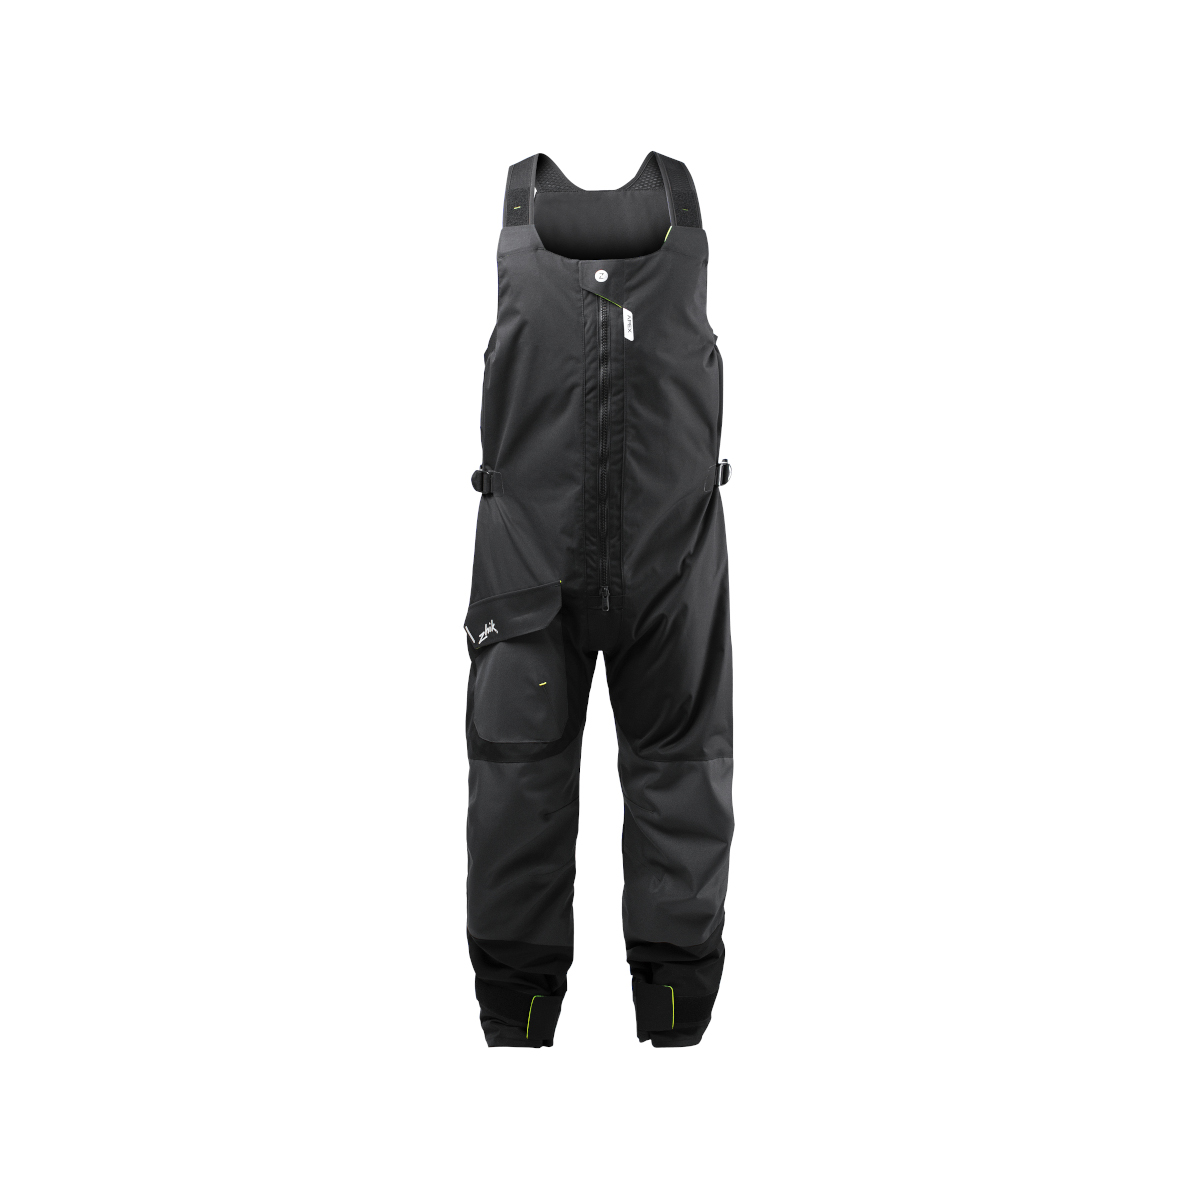 Zhik OFS700 pantalon de voile Coastal unisexe gris foncé, taille M